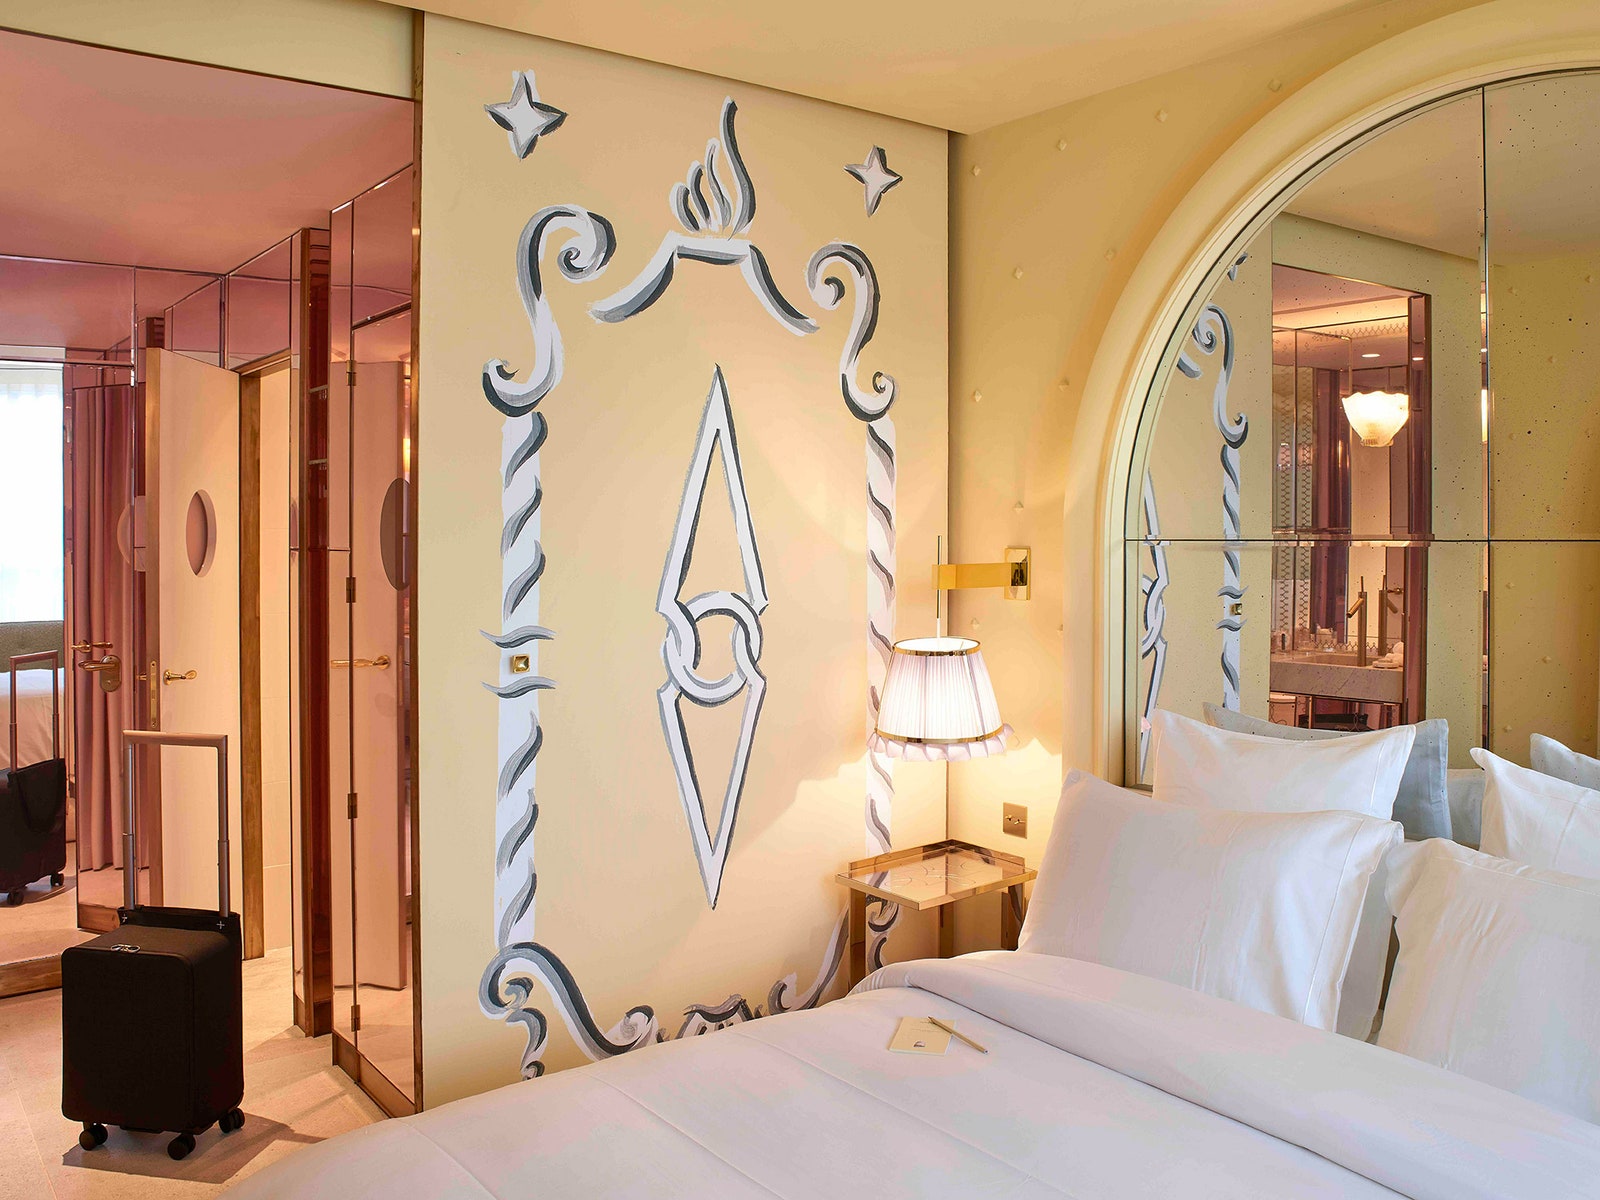 Изящный отель в Париже по дизайну Филиппа Старка